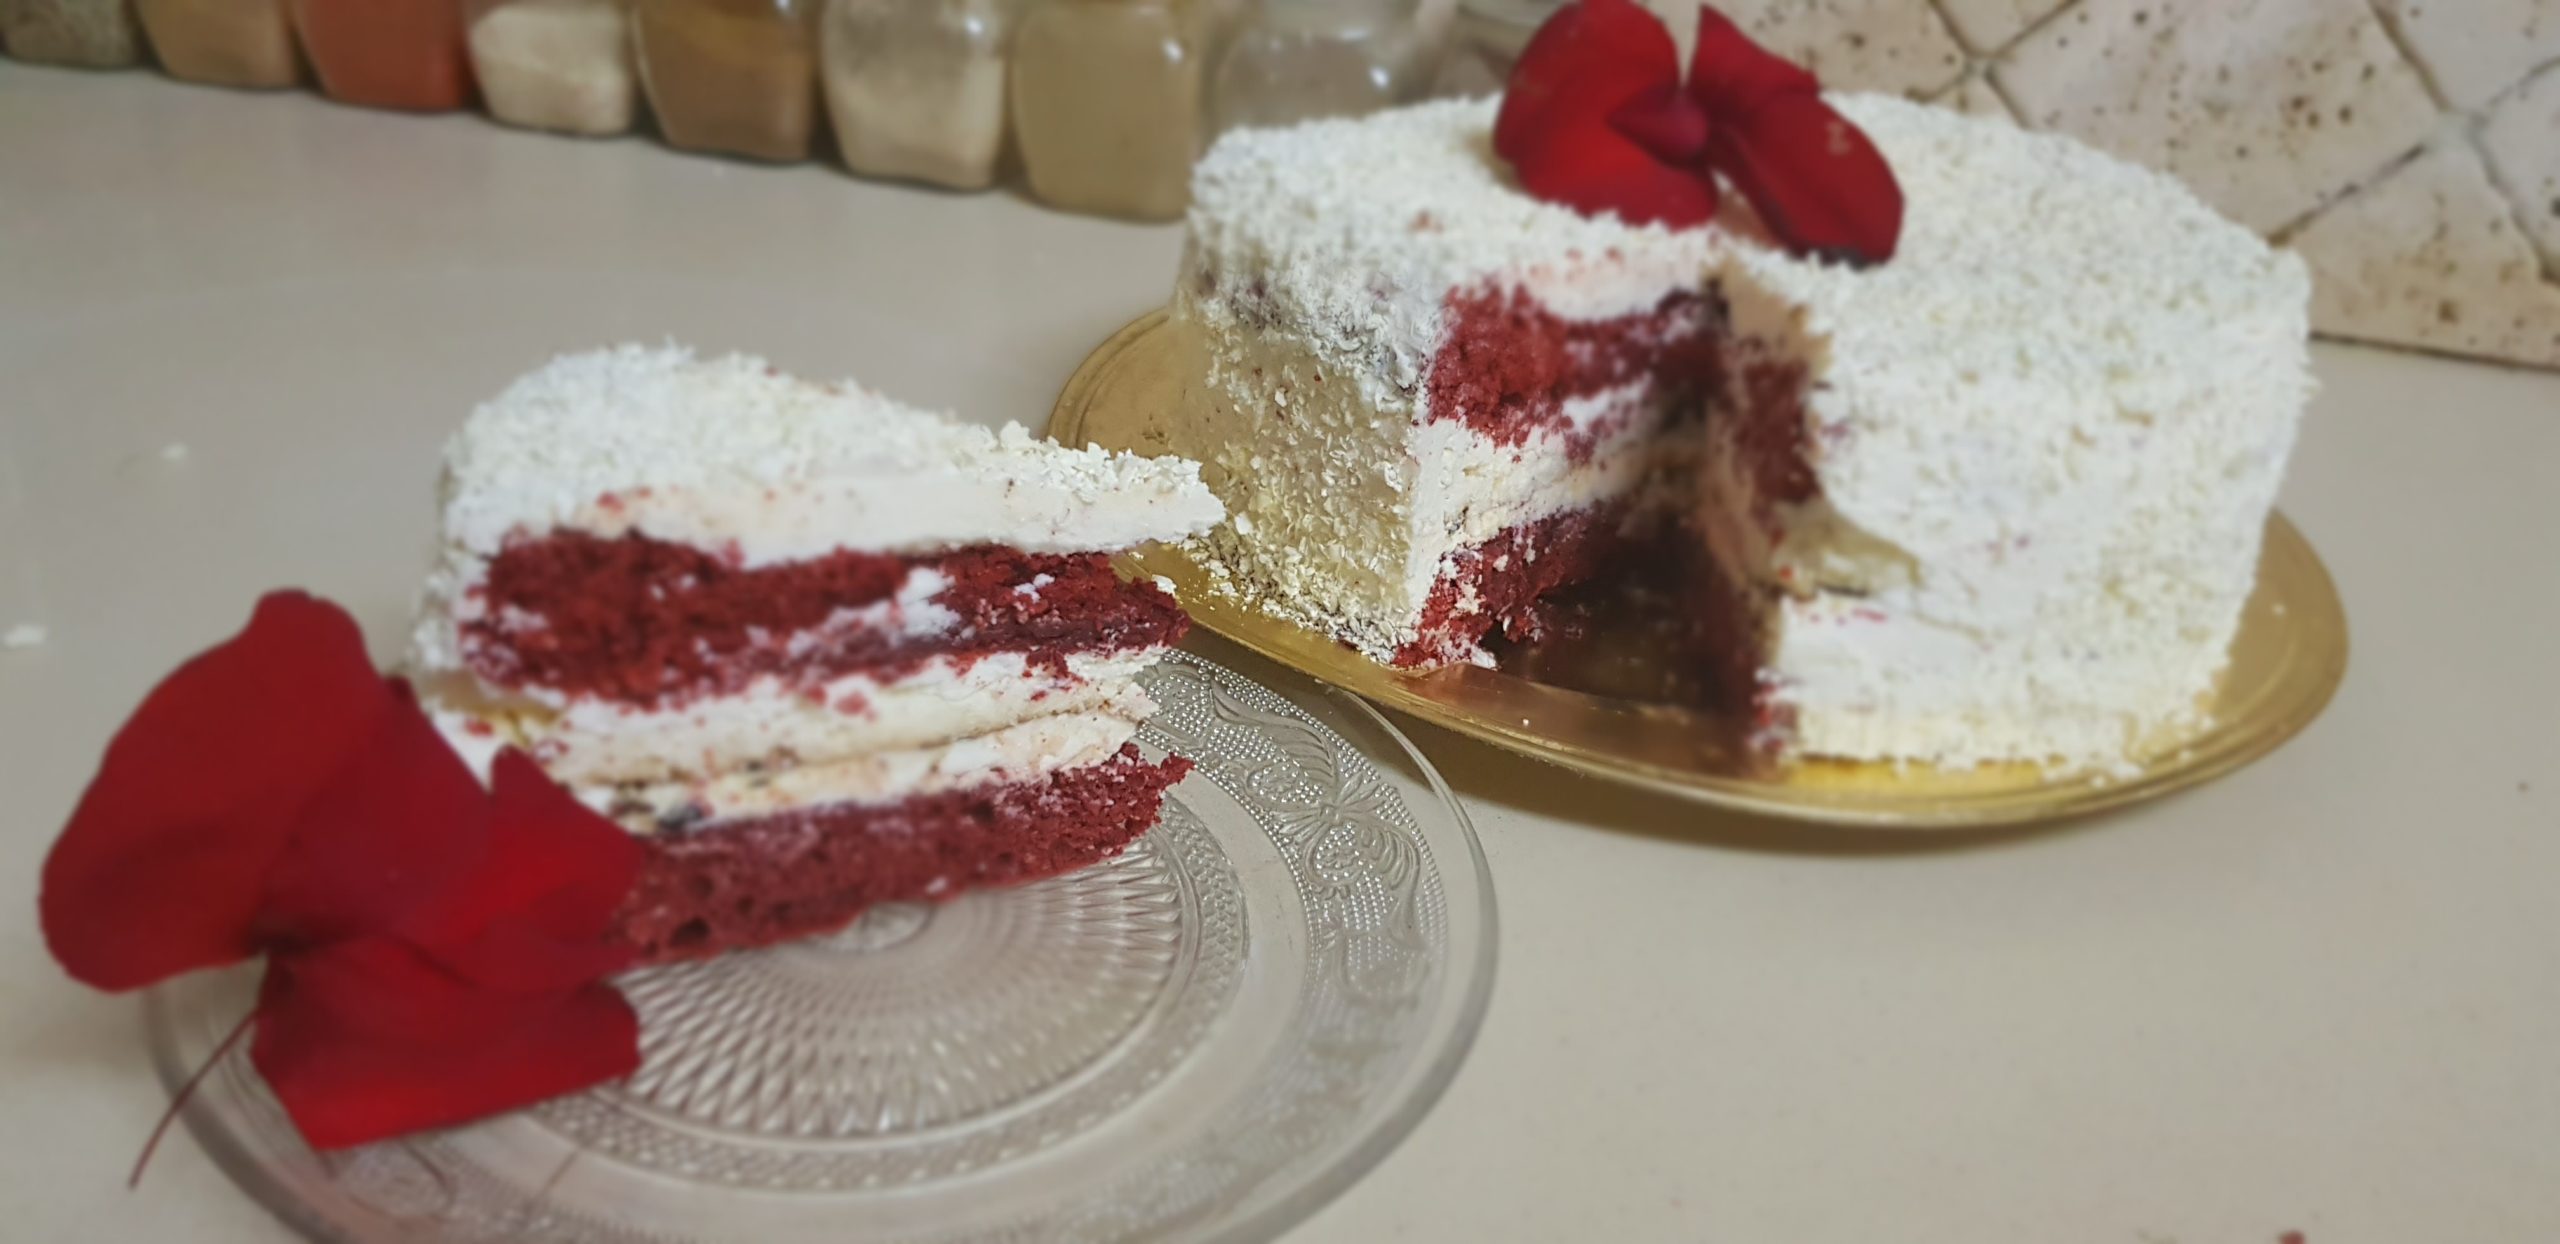 Le red velvet cake, ou gâteau rouge velours d'origine américaine